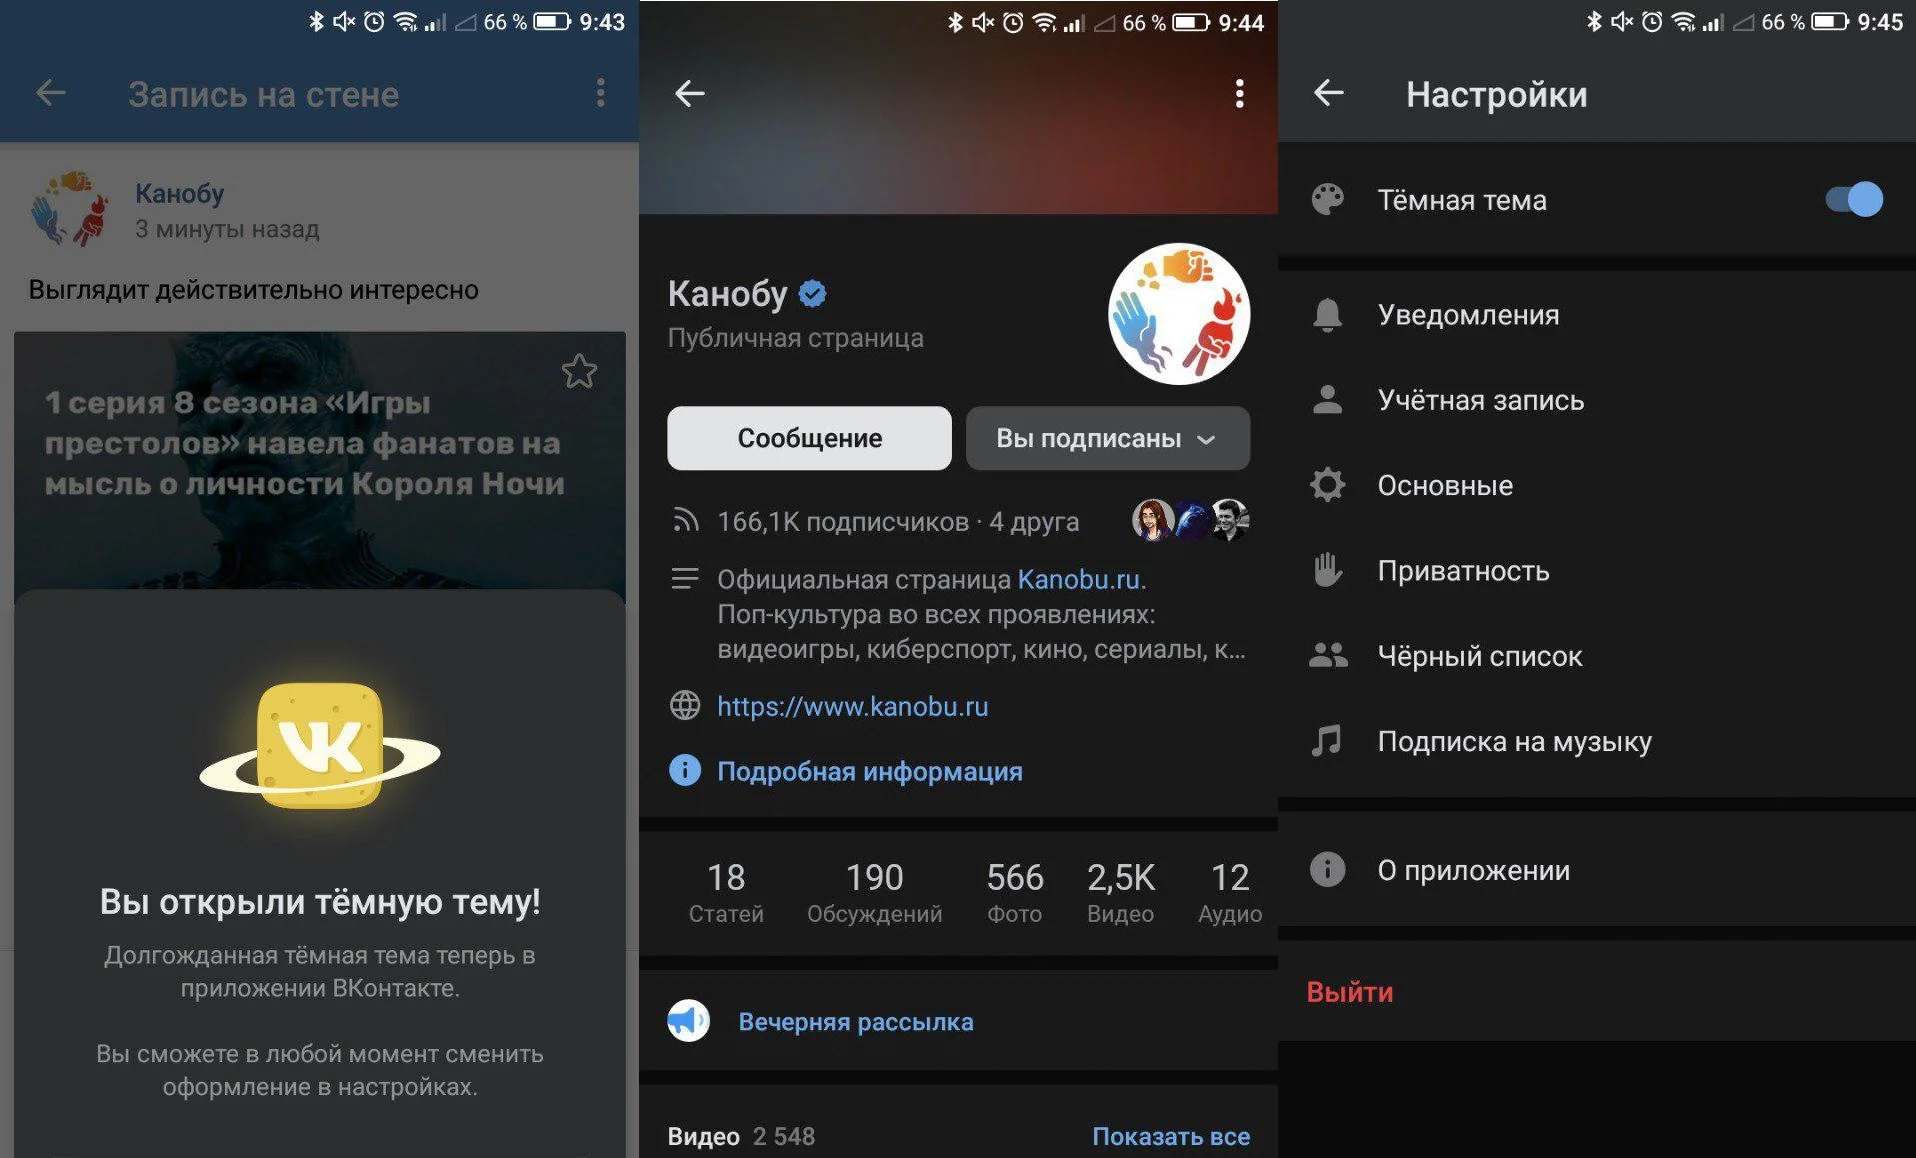 Приложение «ВКонтакте» для Android получило темную тему - фото 2